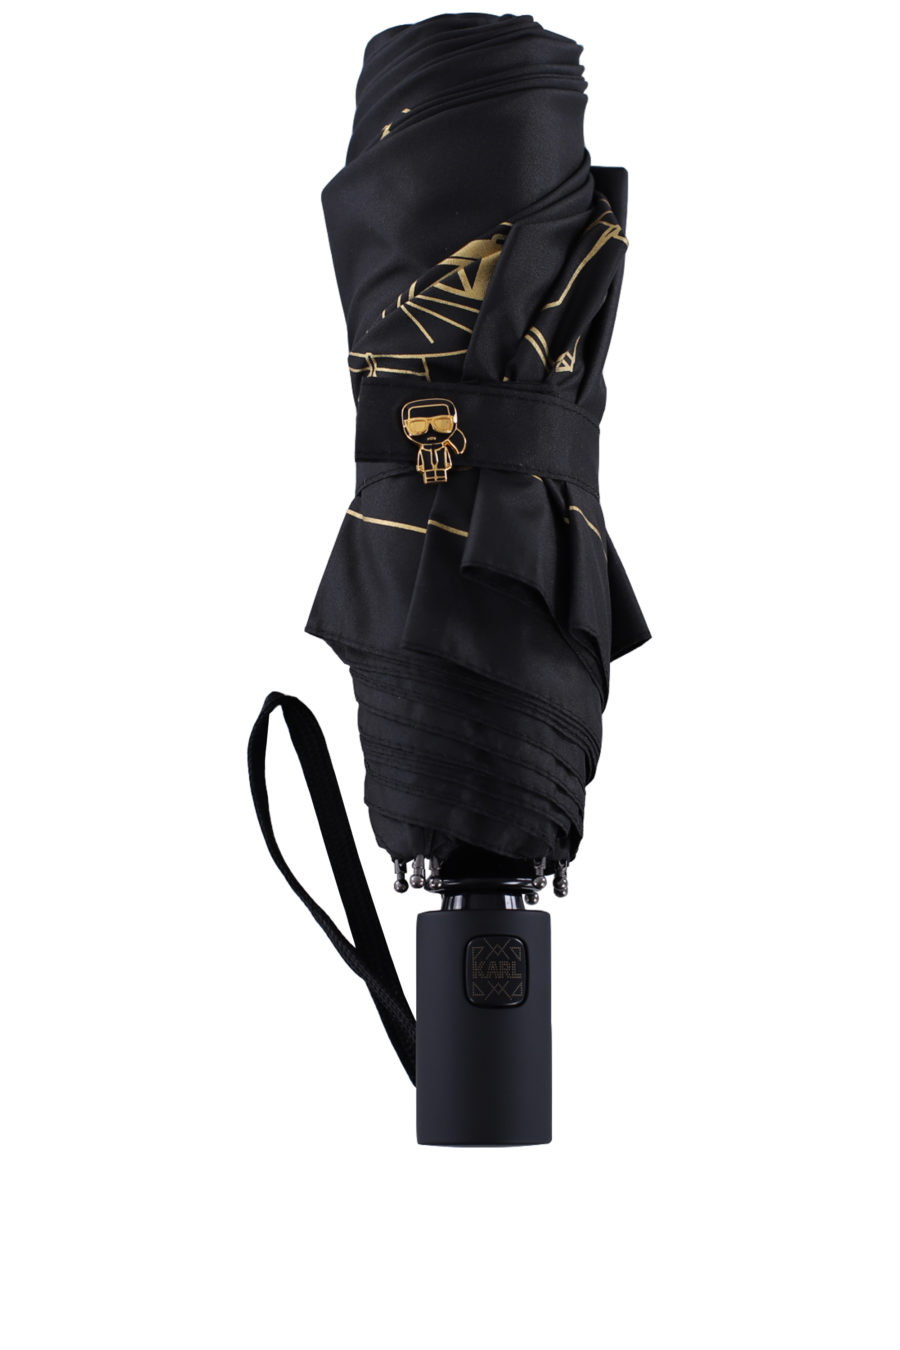 Paraguas color negro con logotipo "Karl" - IMG 0112